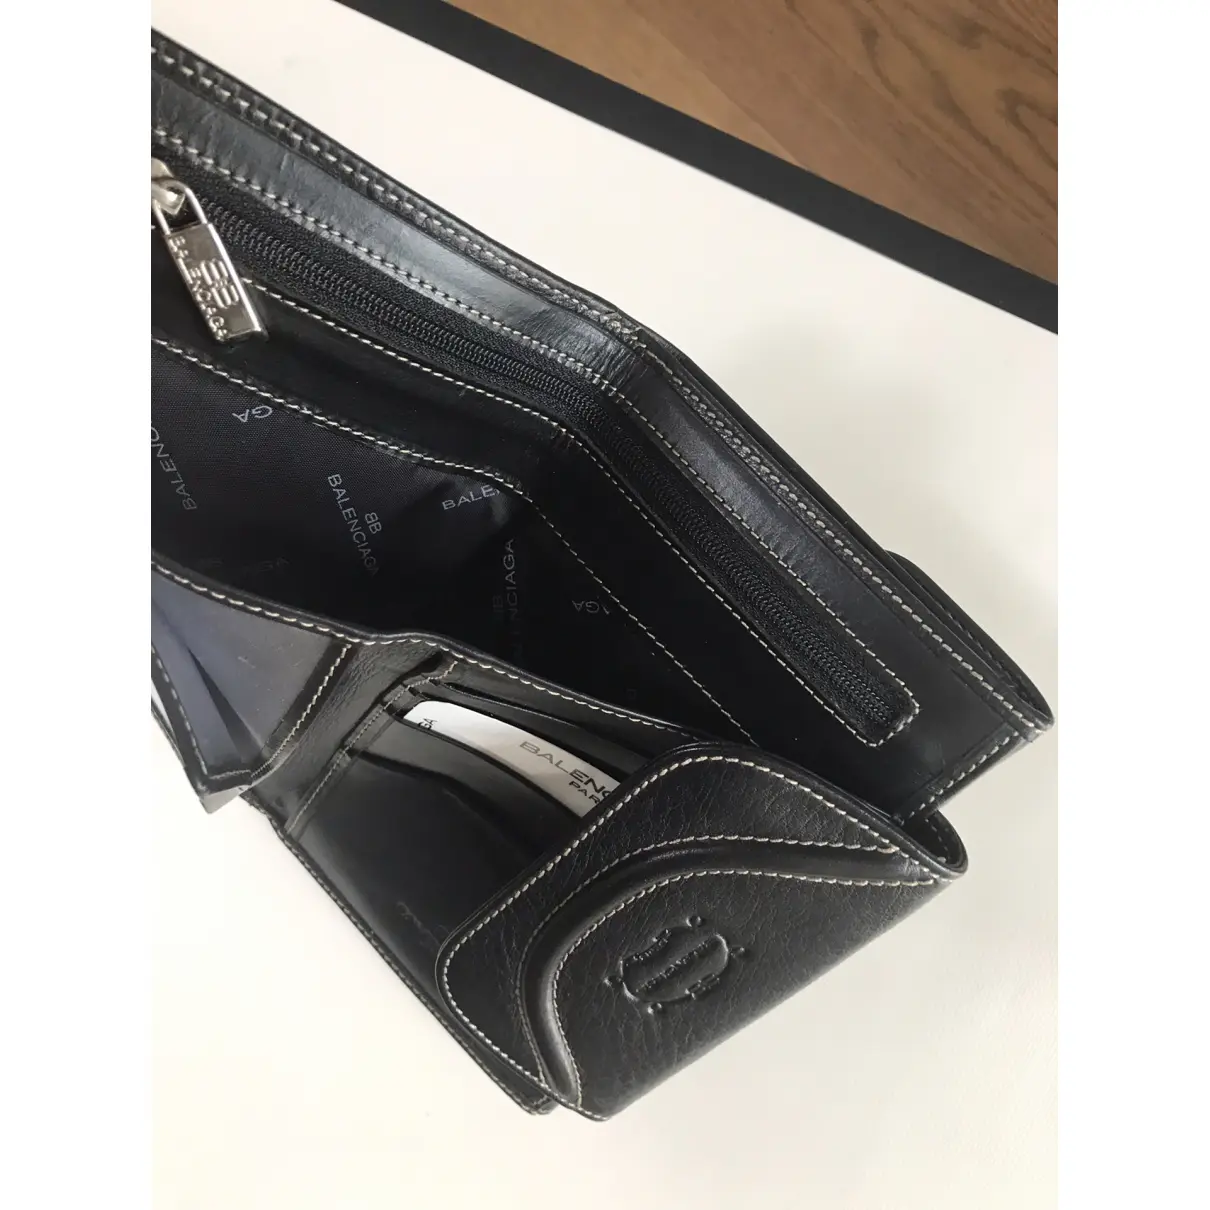 Leather wallet Balenciaga